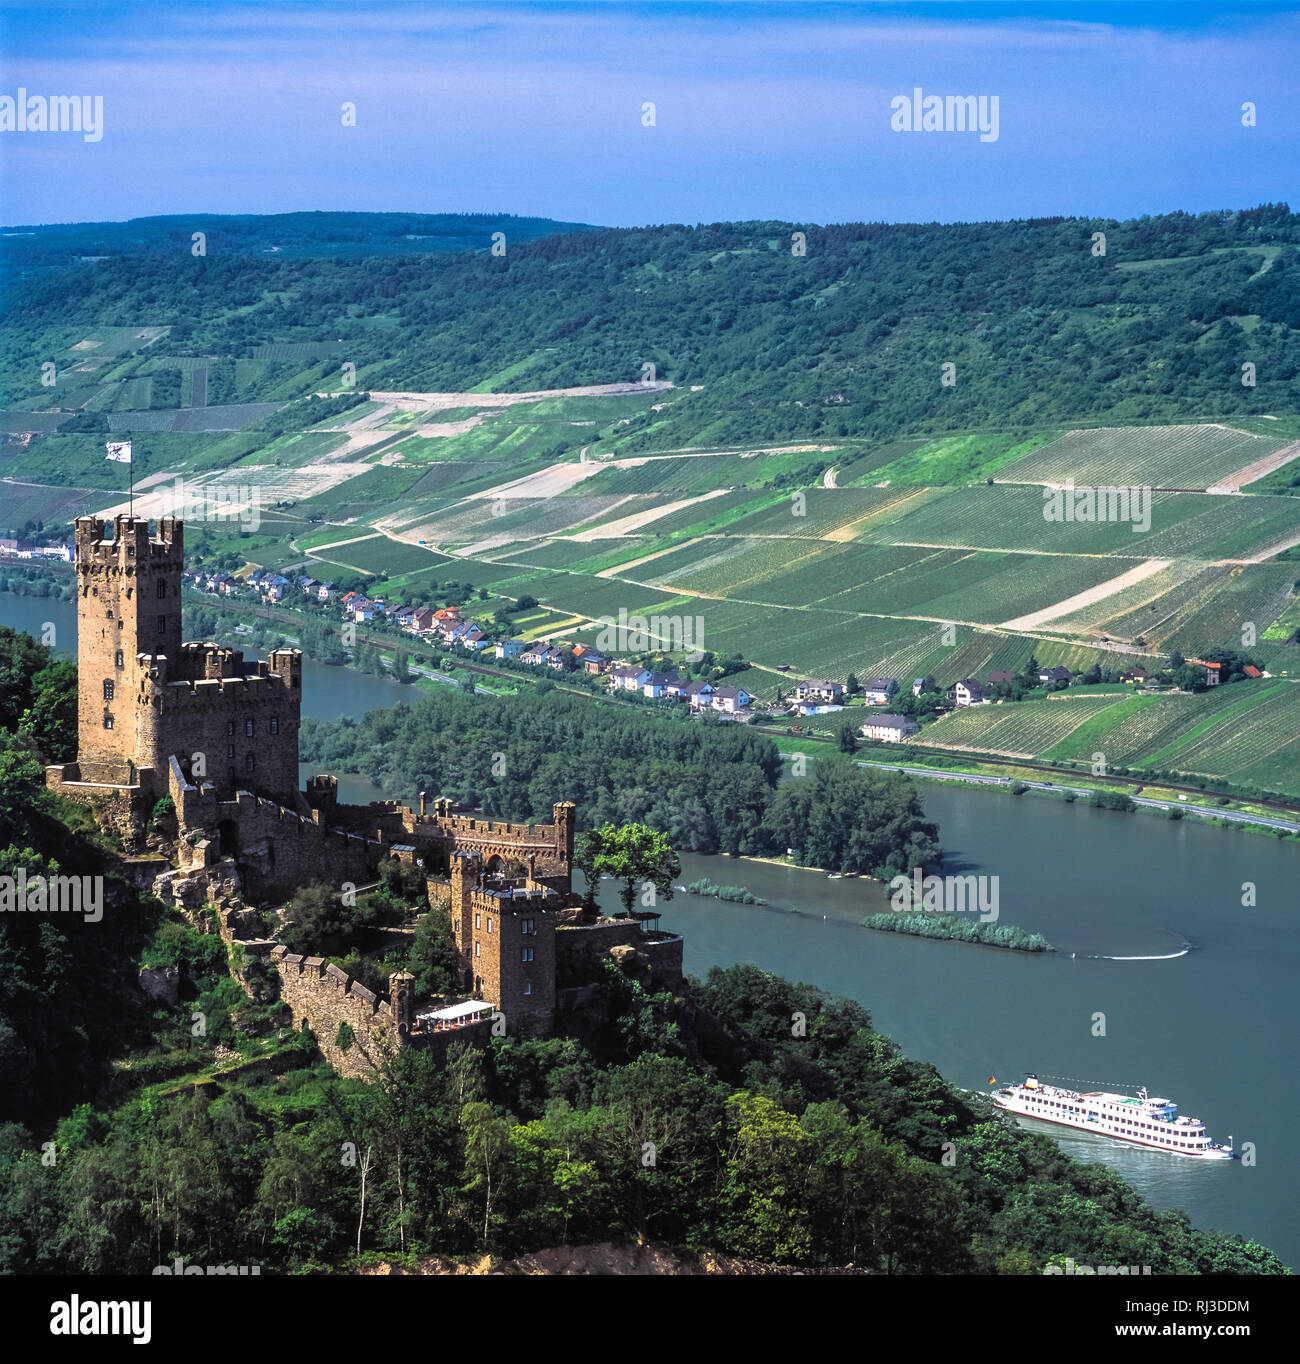 Château Sooneck (allemand : Burg Sooneck) est un château dans le coin supérieur moyenne vallée du Rhin, dans le district de Mayence-bingen Rhénanie-palatinat, Germa Banque D'Images